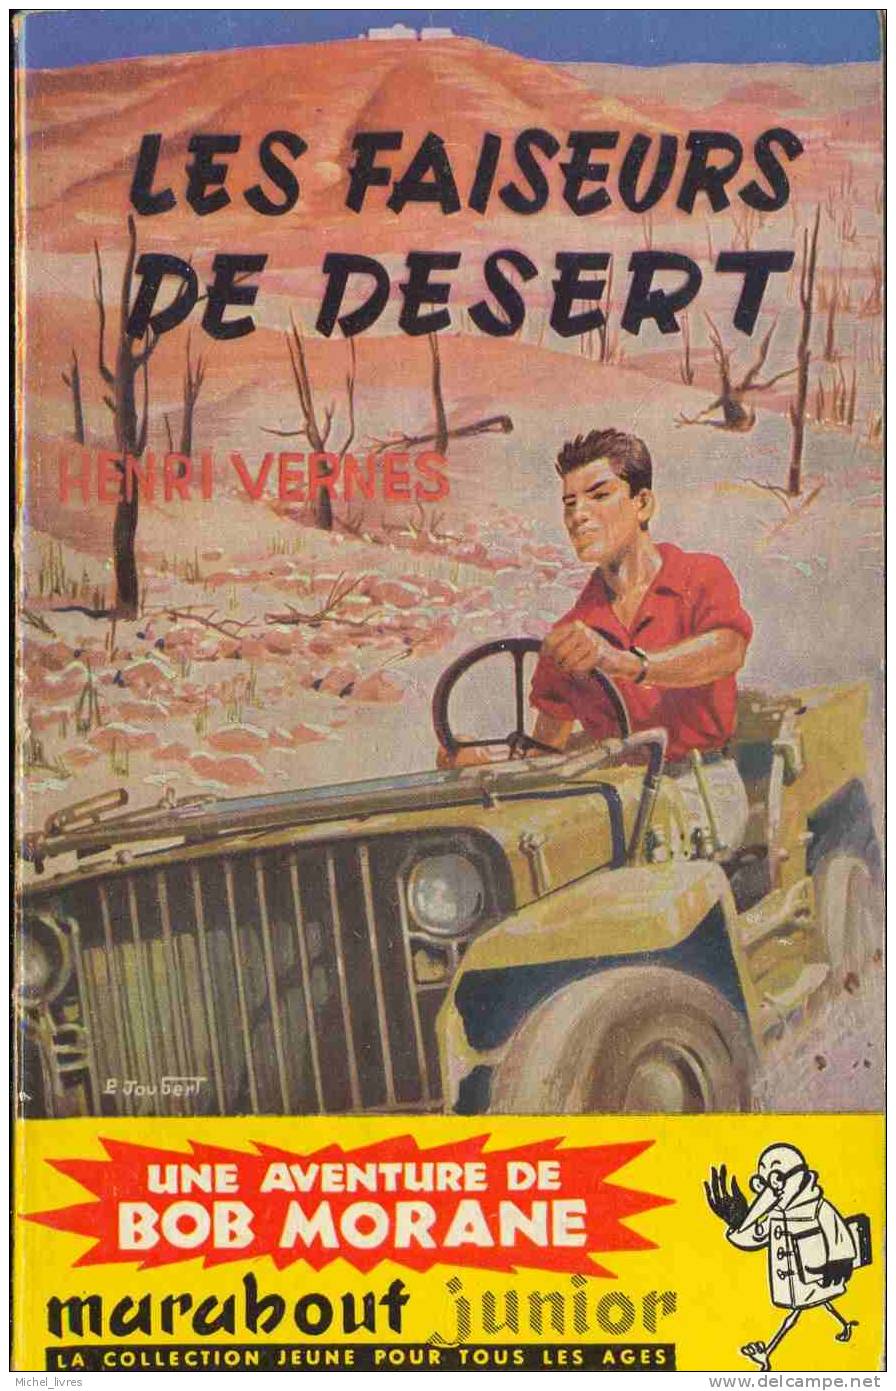 Bob Morane - Henri Vernes - MJ 042 - Les Faiseurs De Déserts - Réed 1960 - Type 2 - Index 178 - TBE - Belgian Authors